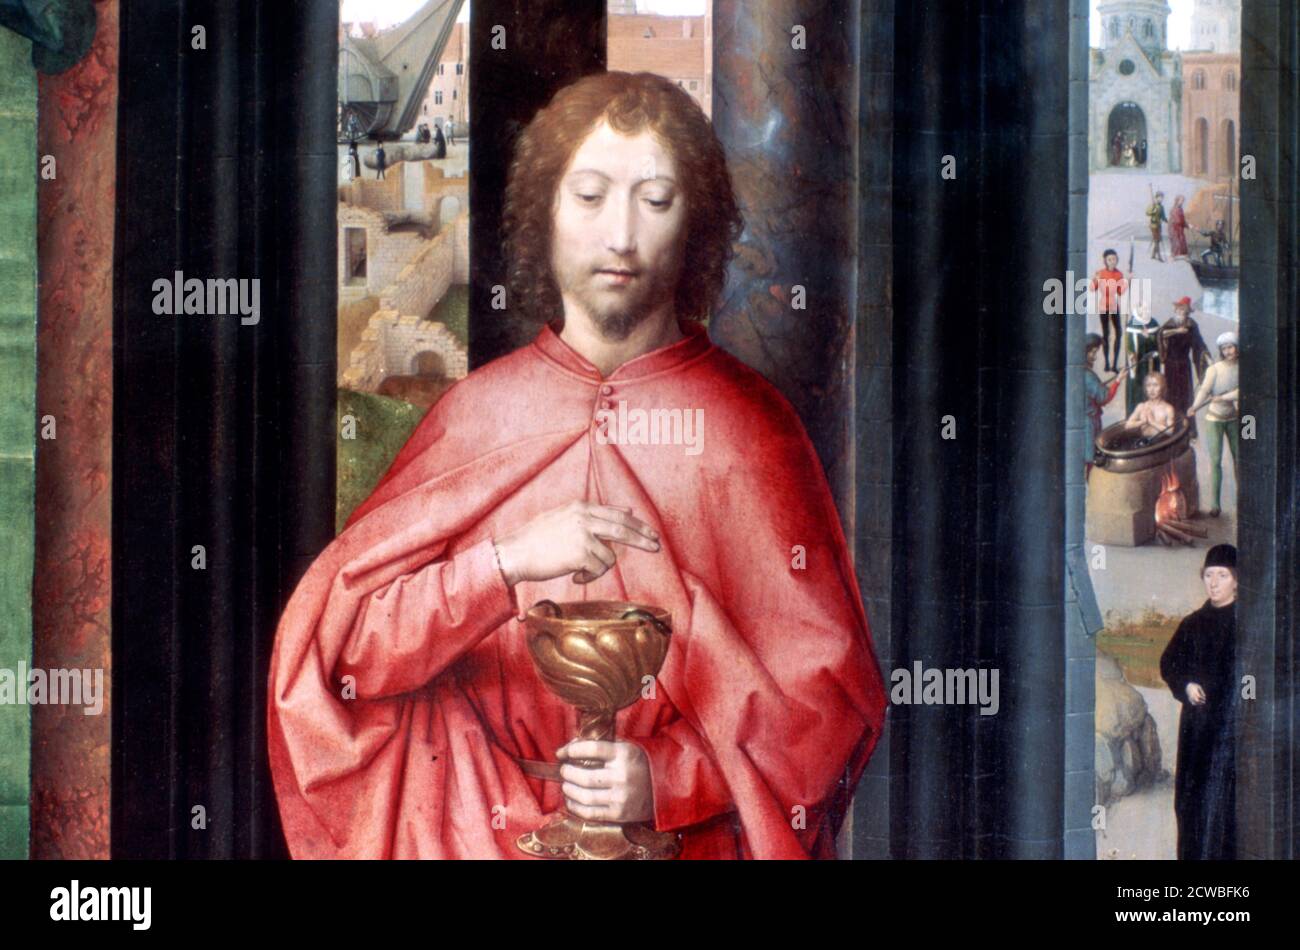 Mystic Marriage of St. Catherine and Other Saints', Detail, c1453-1494. Künstler: Hans Memling. Hans Memling war der führende Künstler in Brügge. Sein Werk ist stark von Rogier van der Weyden beeinflusst. Stockfoto